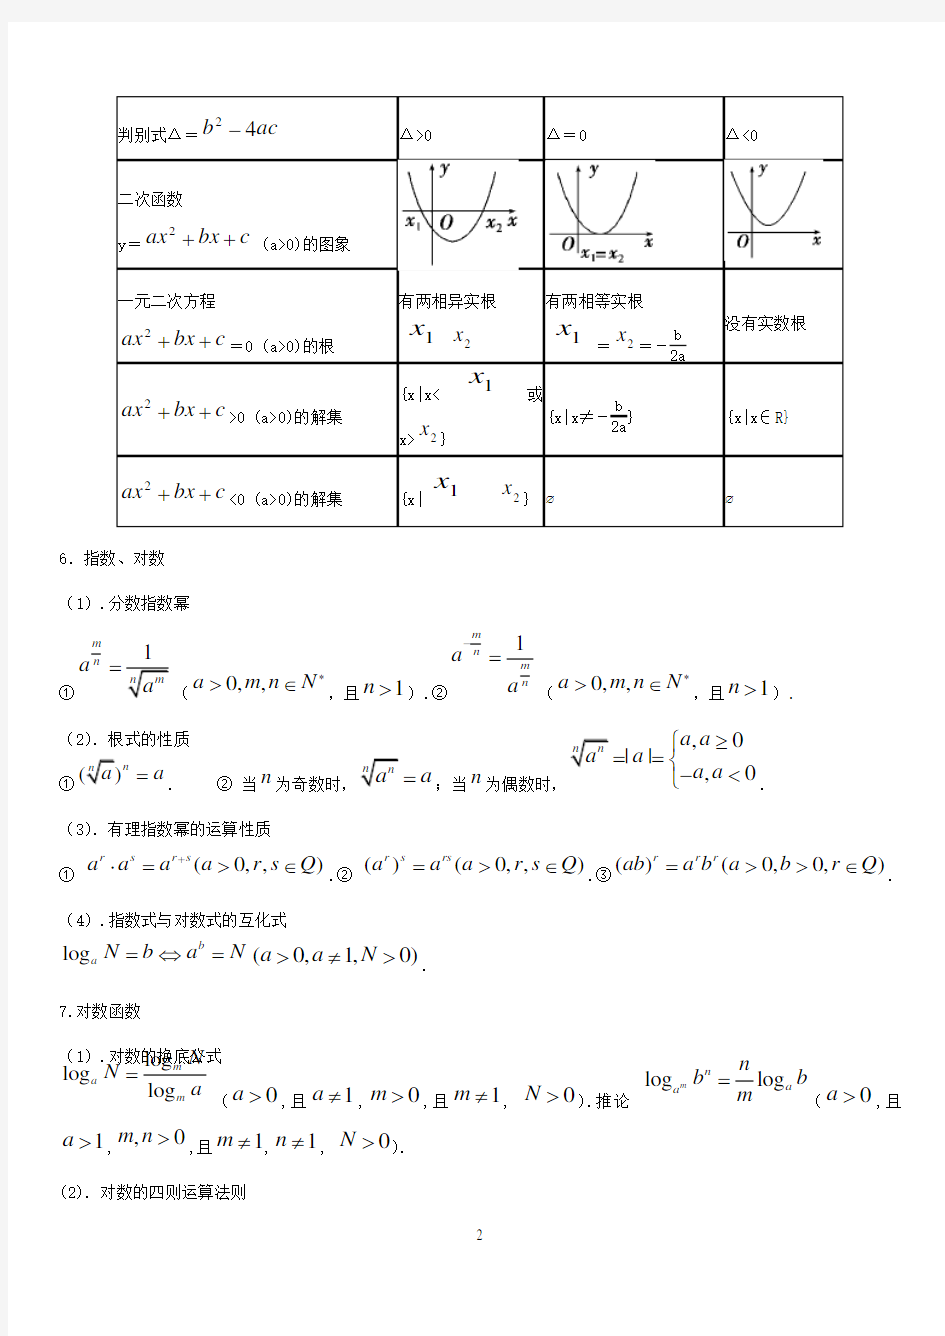 单考单招数学公式总结